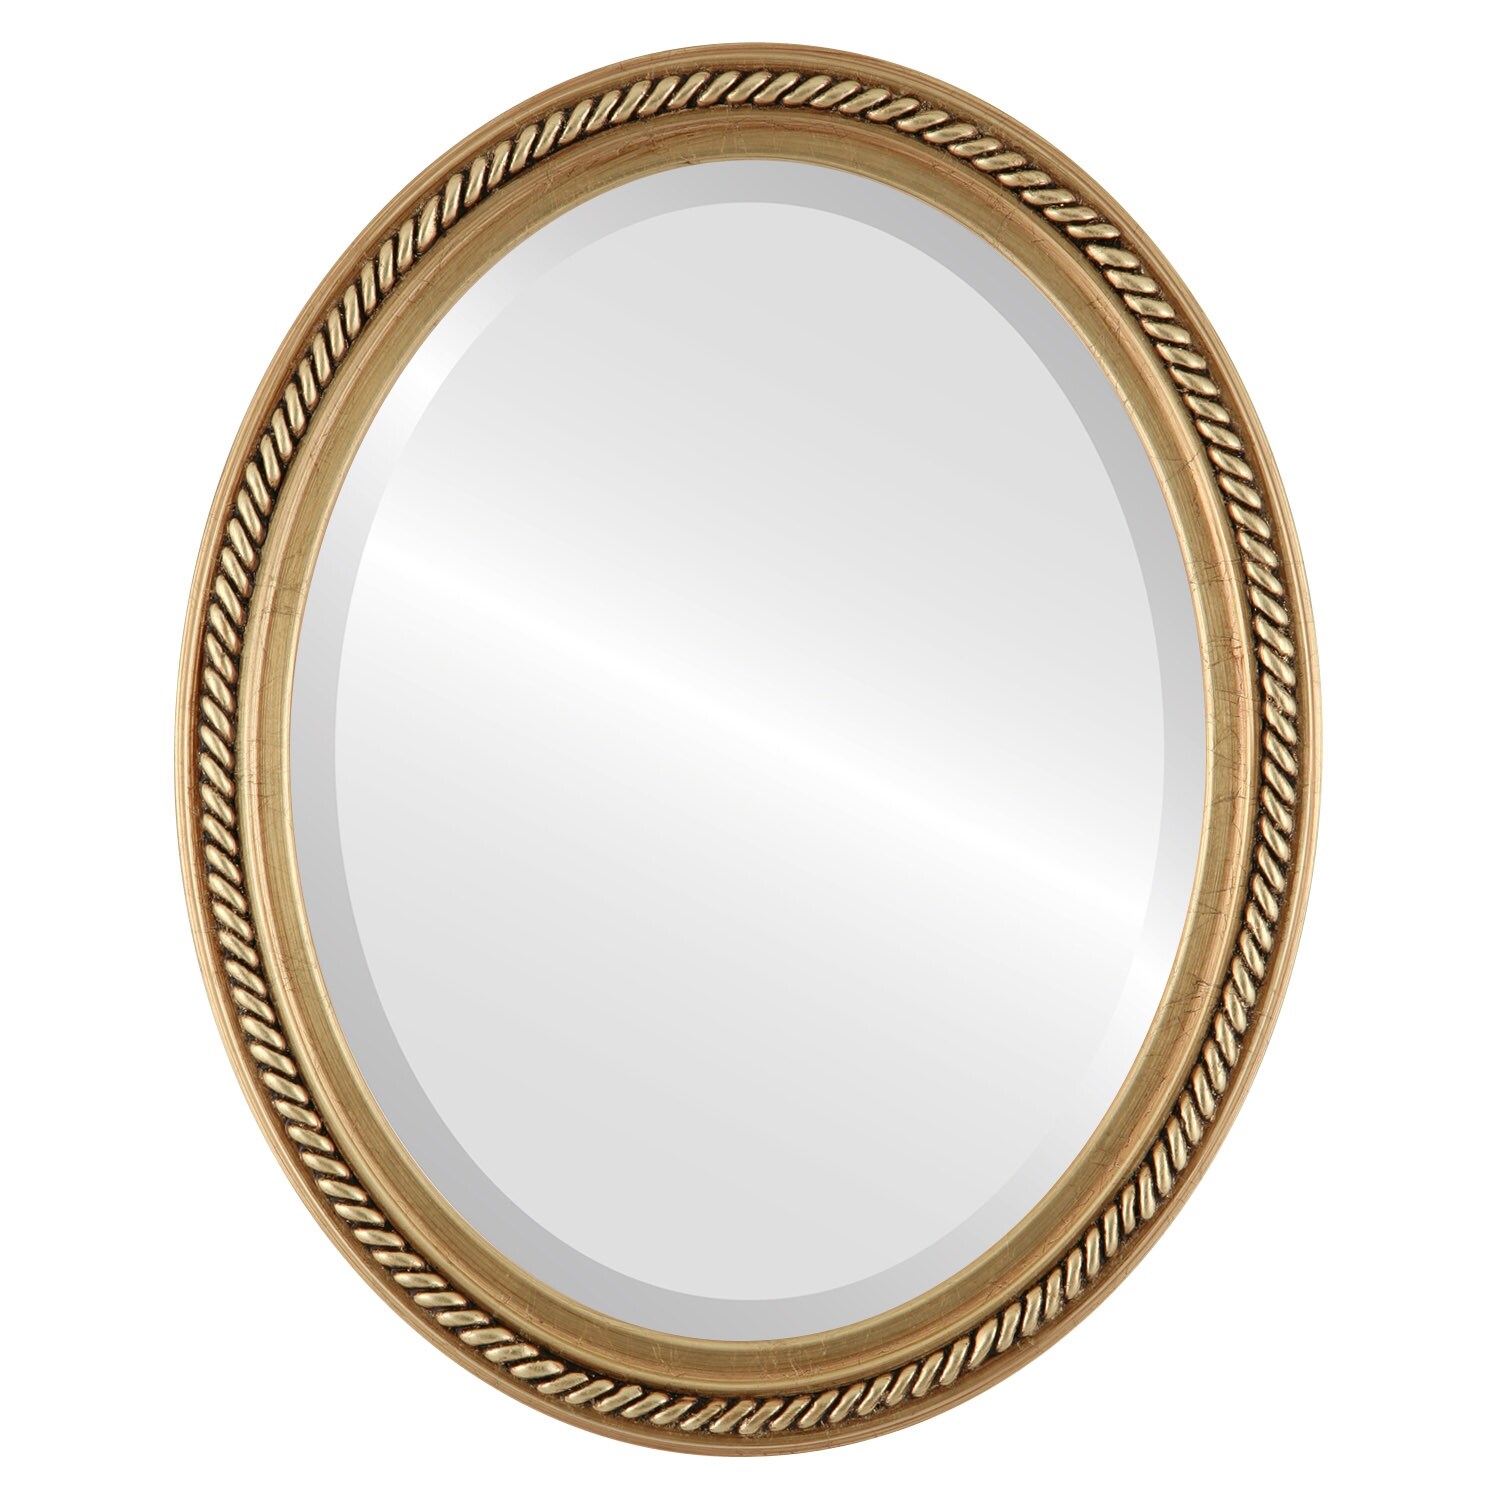 Santa Fe Framed Oval Mirror in Antique Gold Leaf Bed Bath  Beyond  33461546